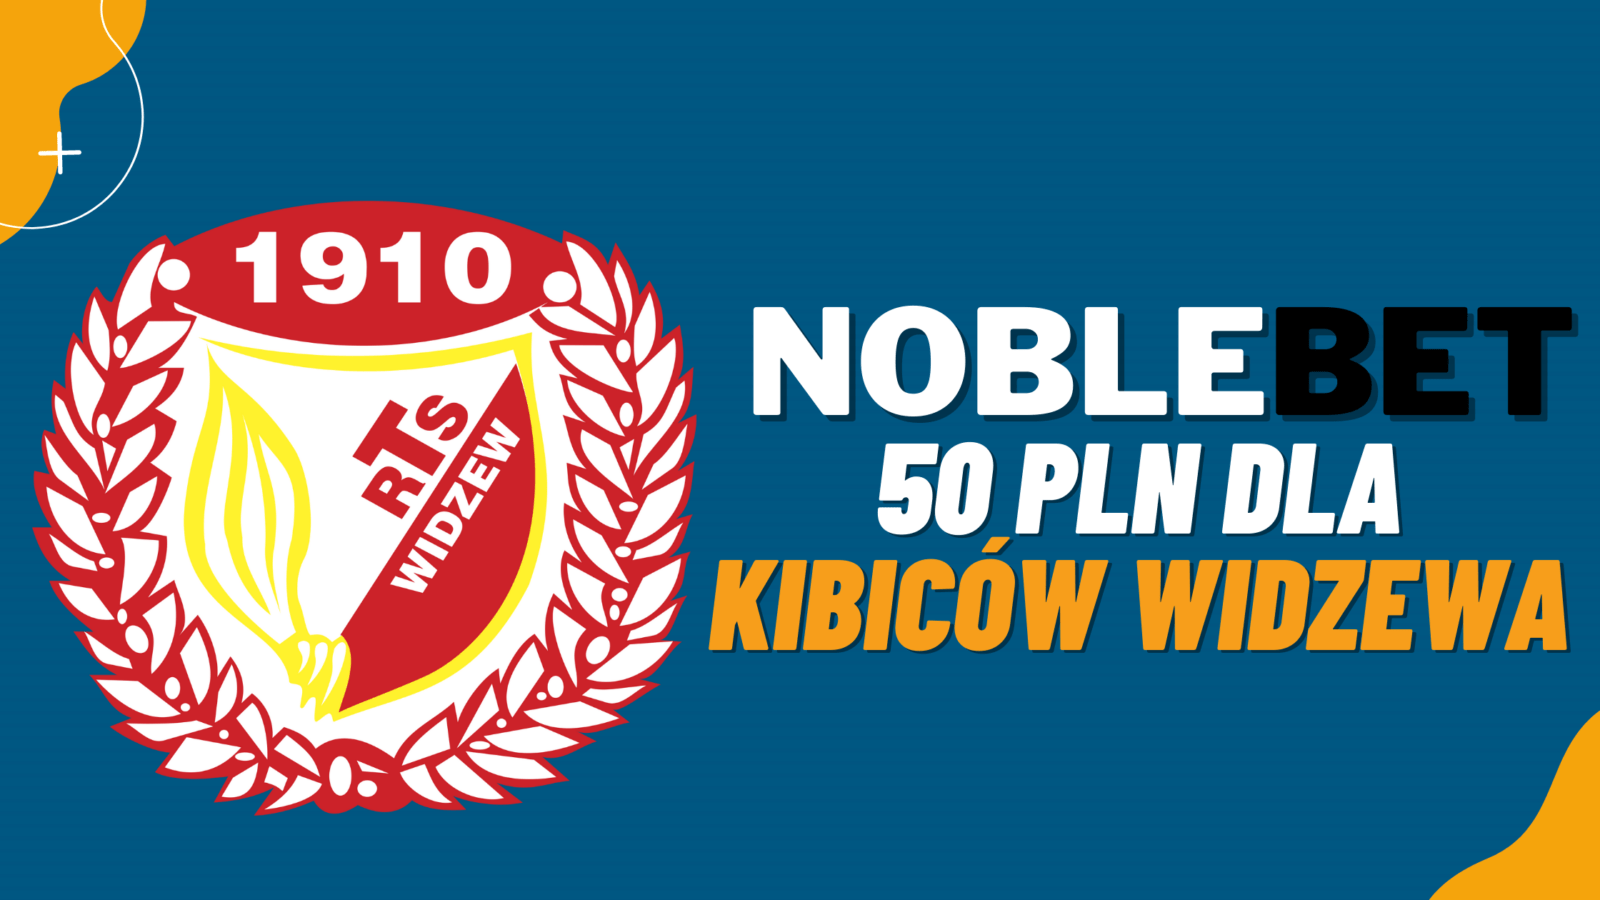 Legalny bukmacher NobleBet 50 PLN dla kibiców Widzewa